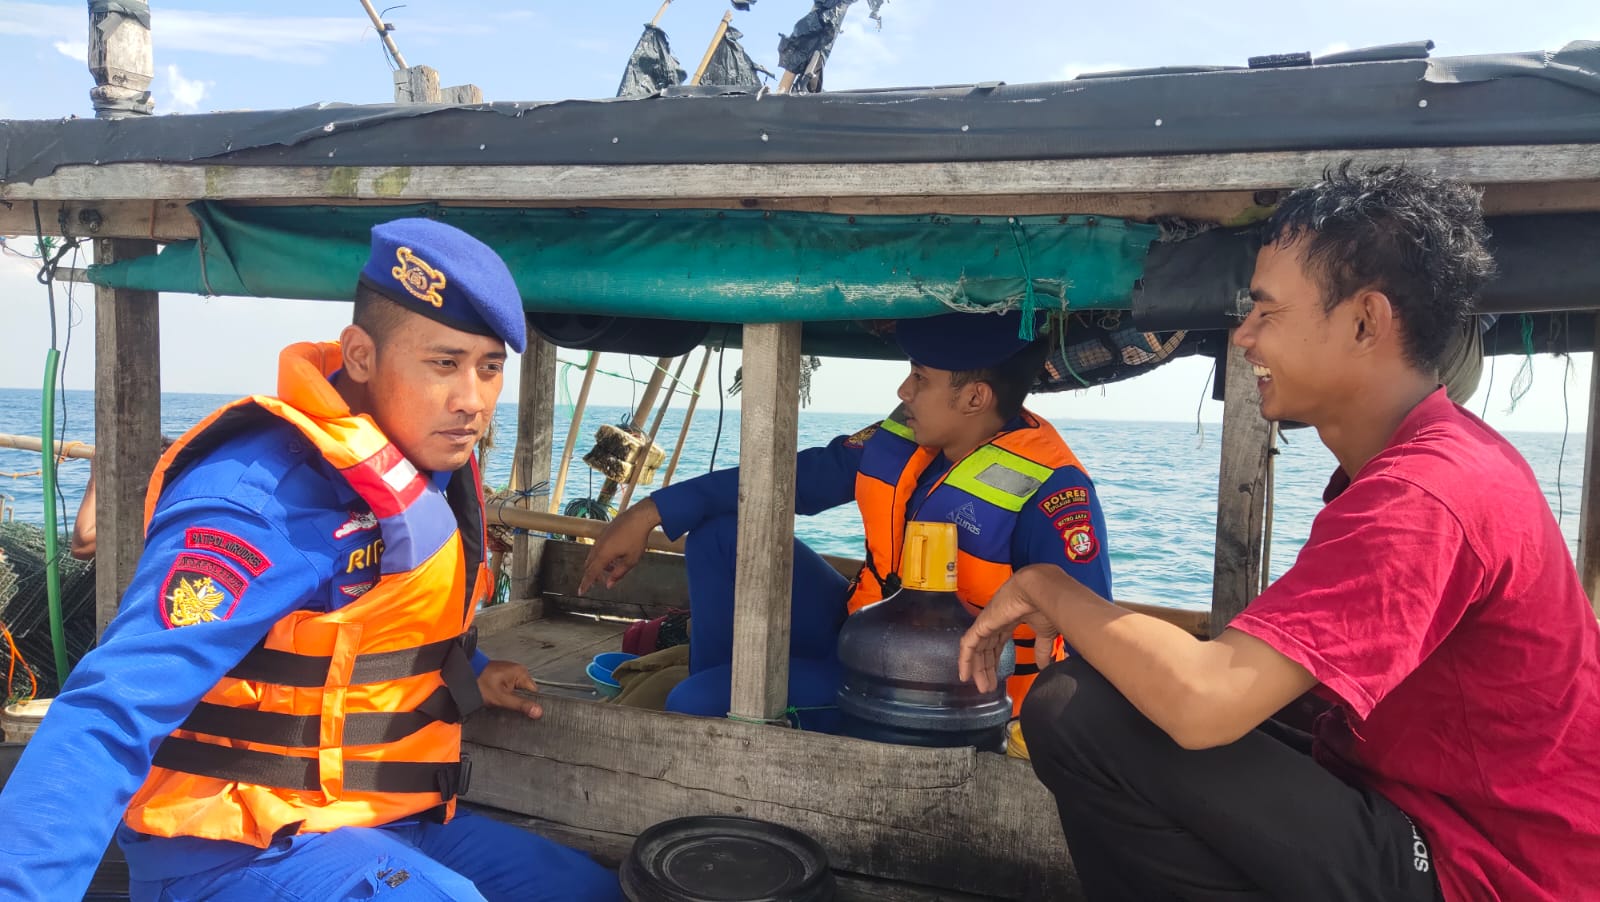 Patroli Laut Dialogis Satpolairud Polres Kepulauan Seribu: Waspada Tindak Kejahatan dan Keselamatan Nelayan di Perairan Kepulauan Seribu